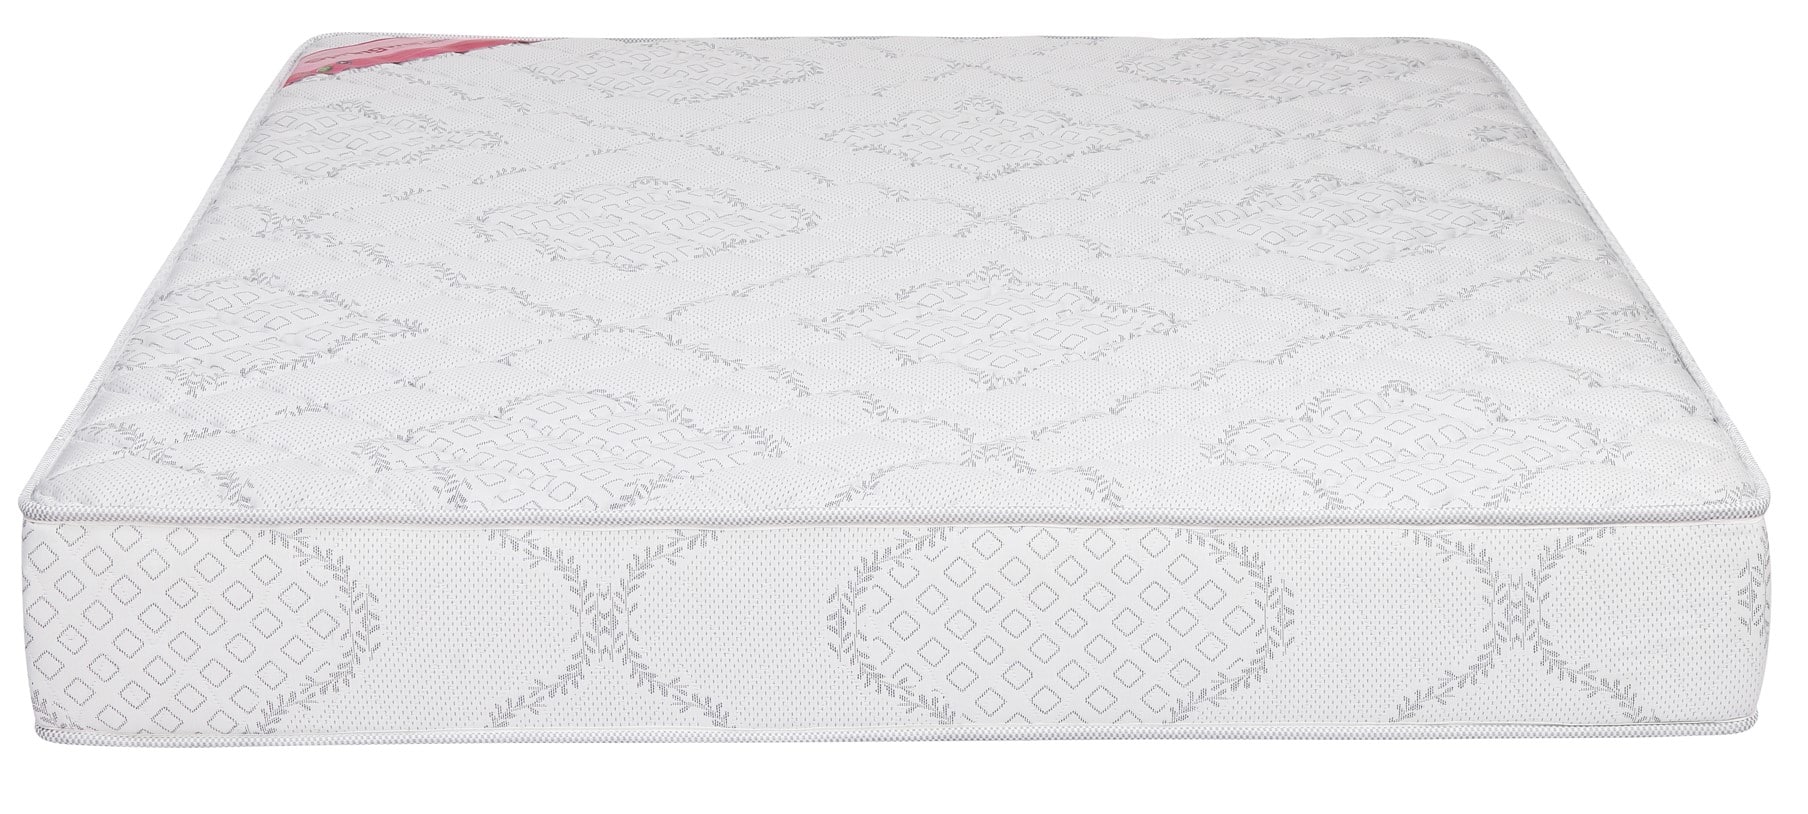 8 inch foam mattress deals